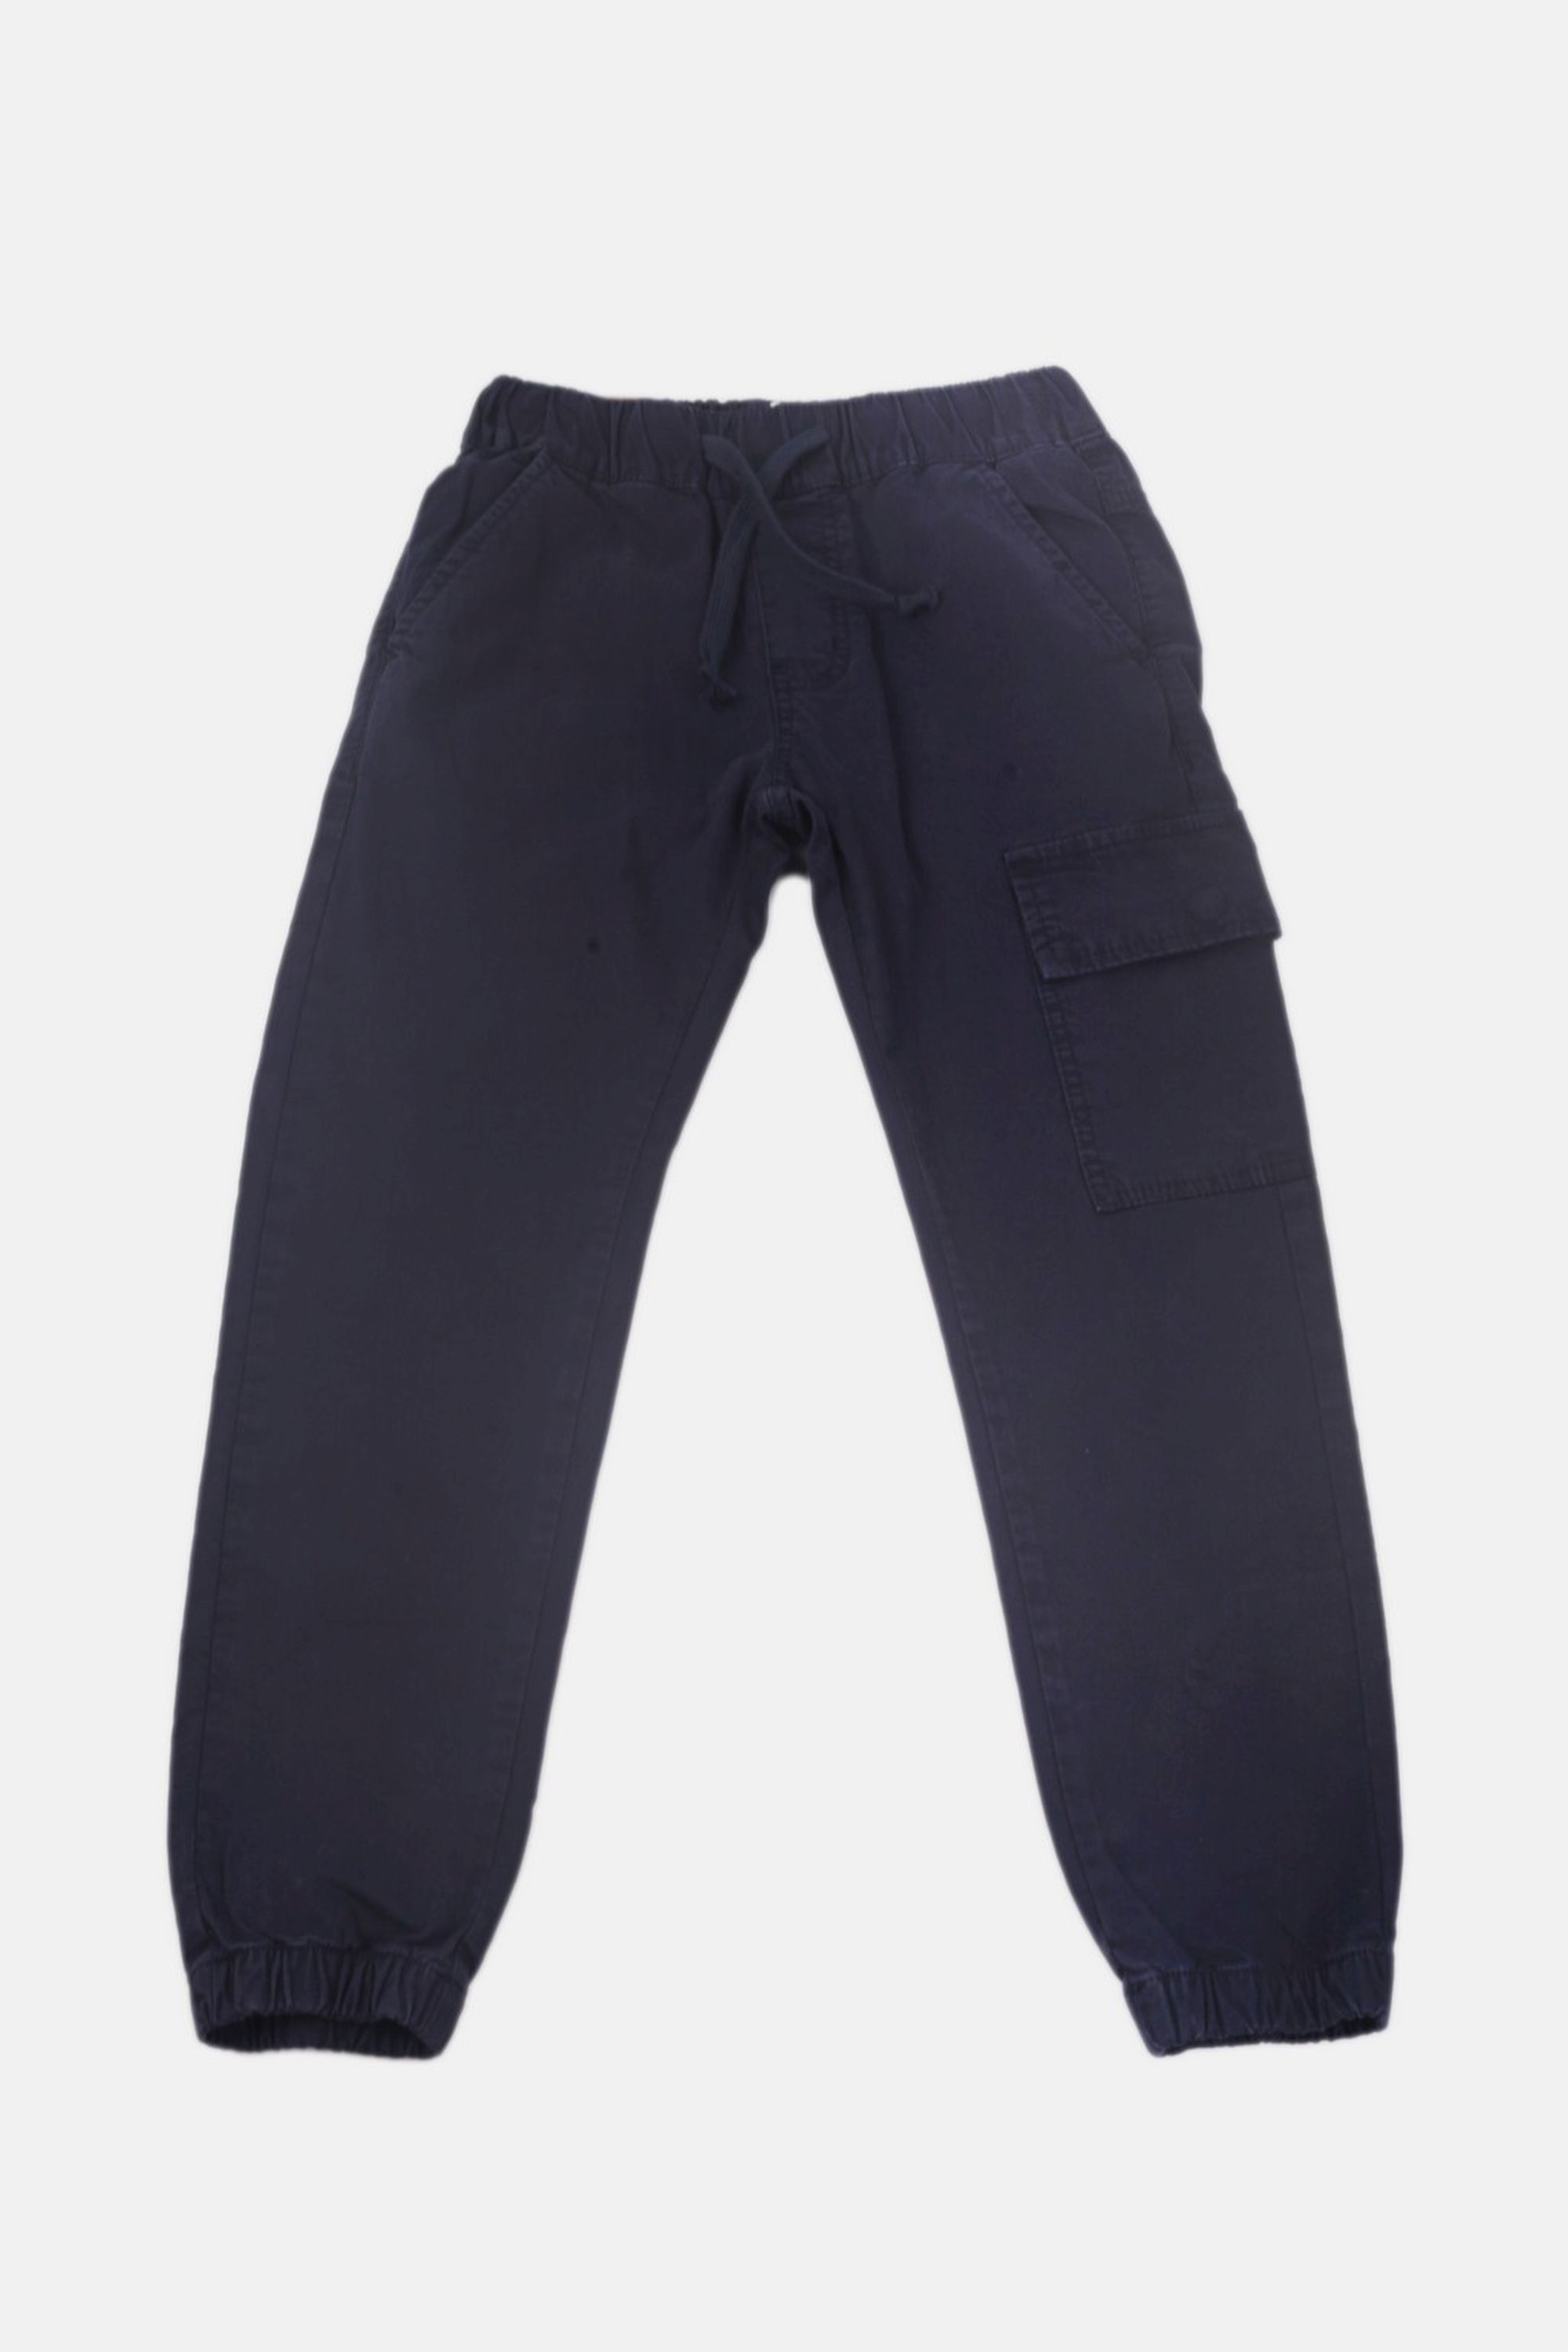 Chlapecké bavlněné kalhoty s gumou v pase/Hnědá, modrá Barva: Modrá, Velikost: vel. 10 (138/144 cm)